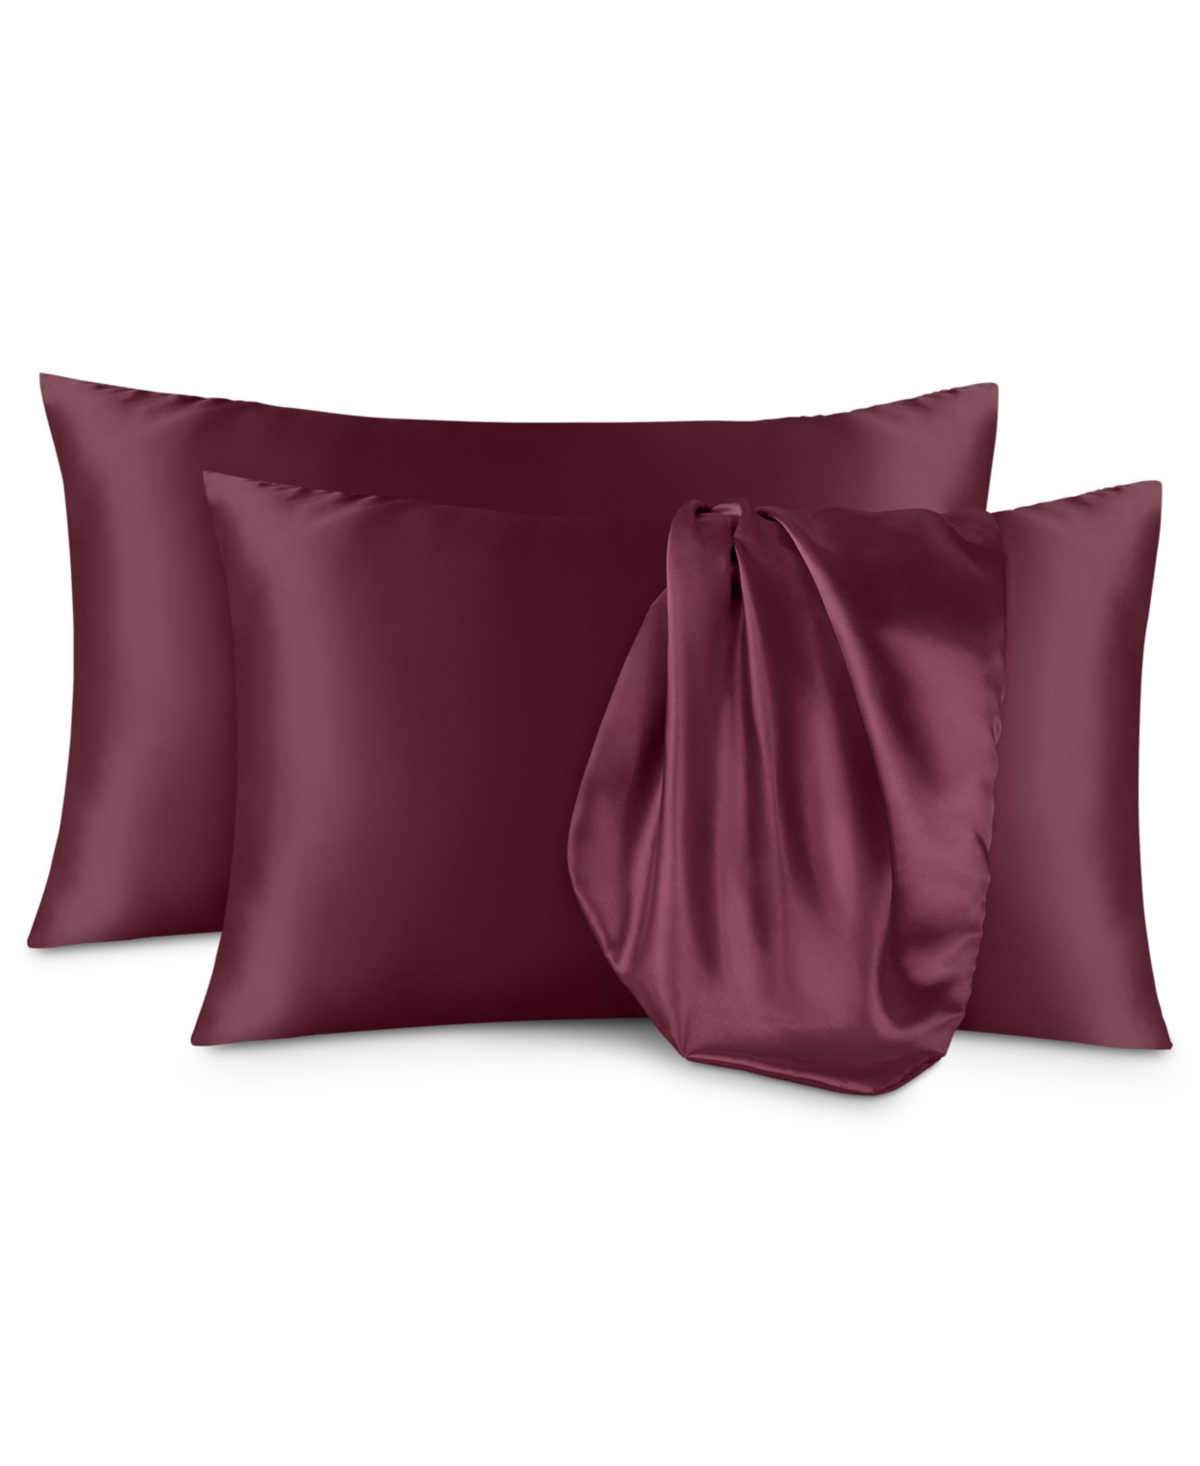 Bare Home Satin Pillowcases King In Burgundy